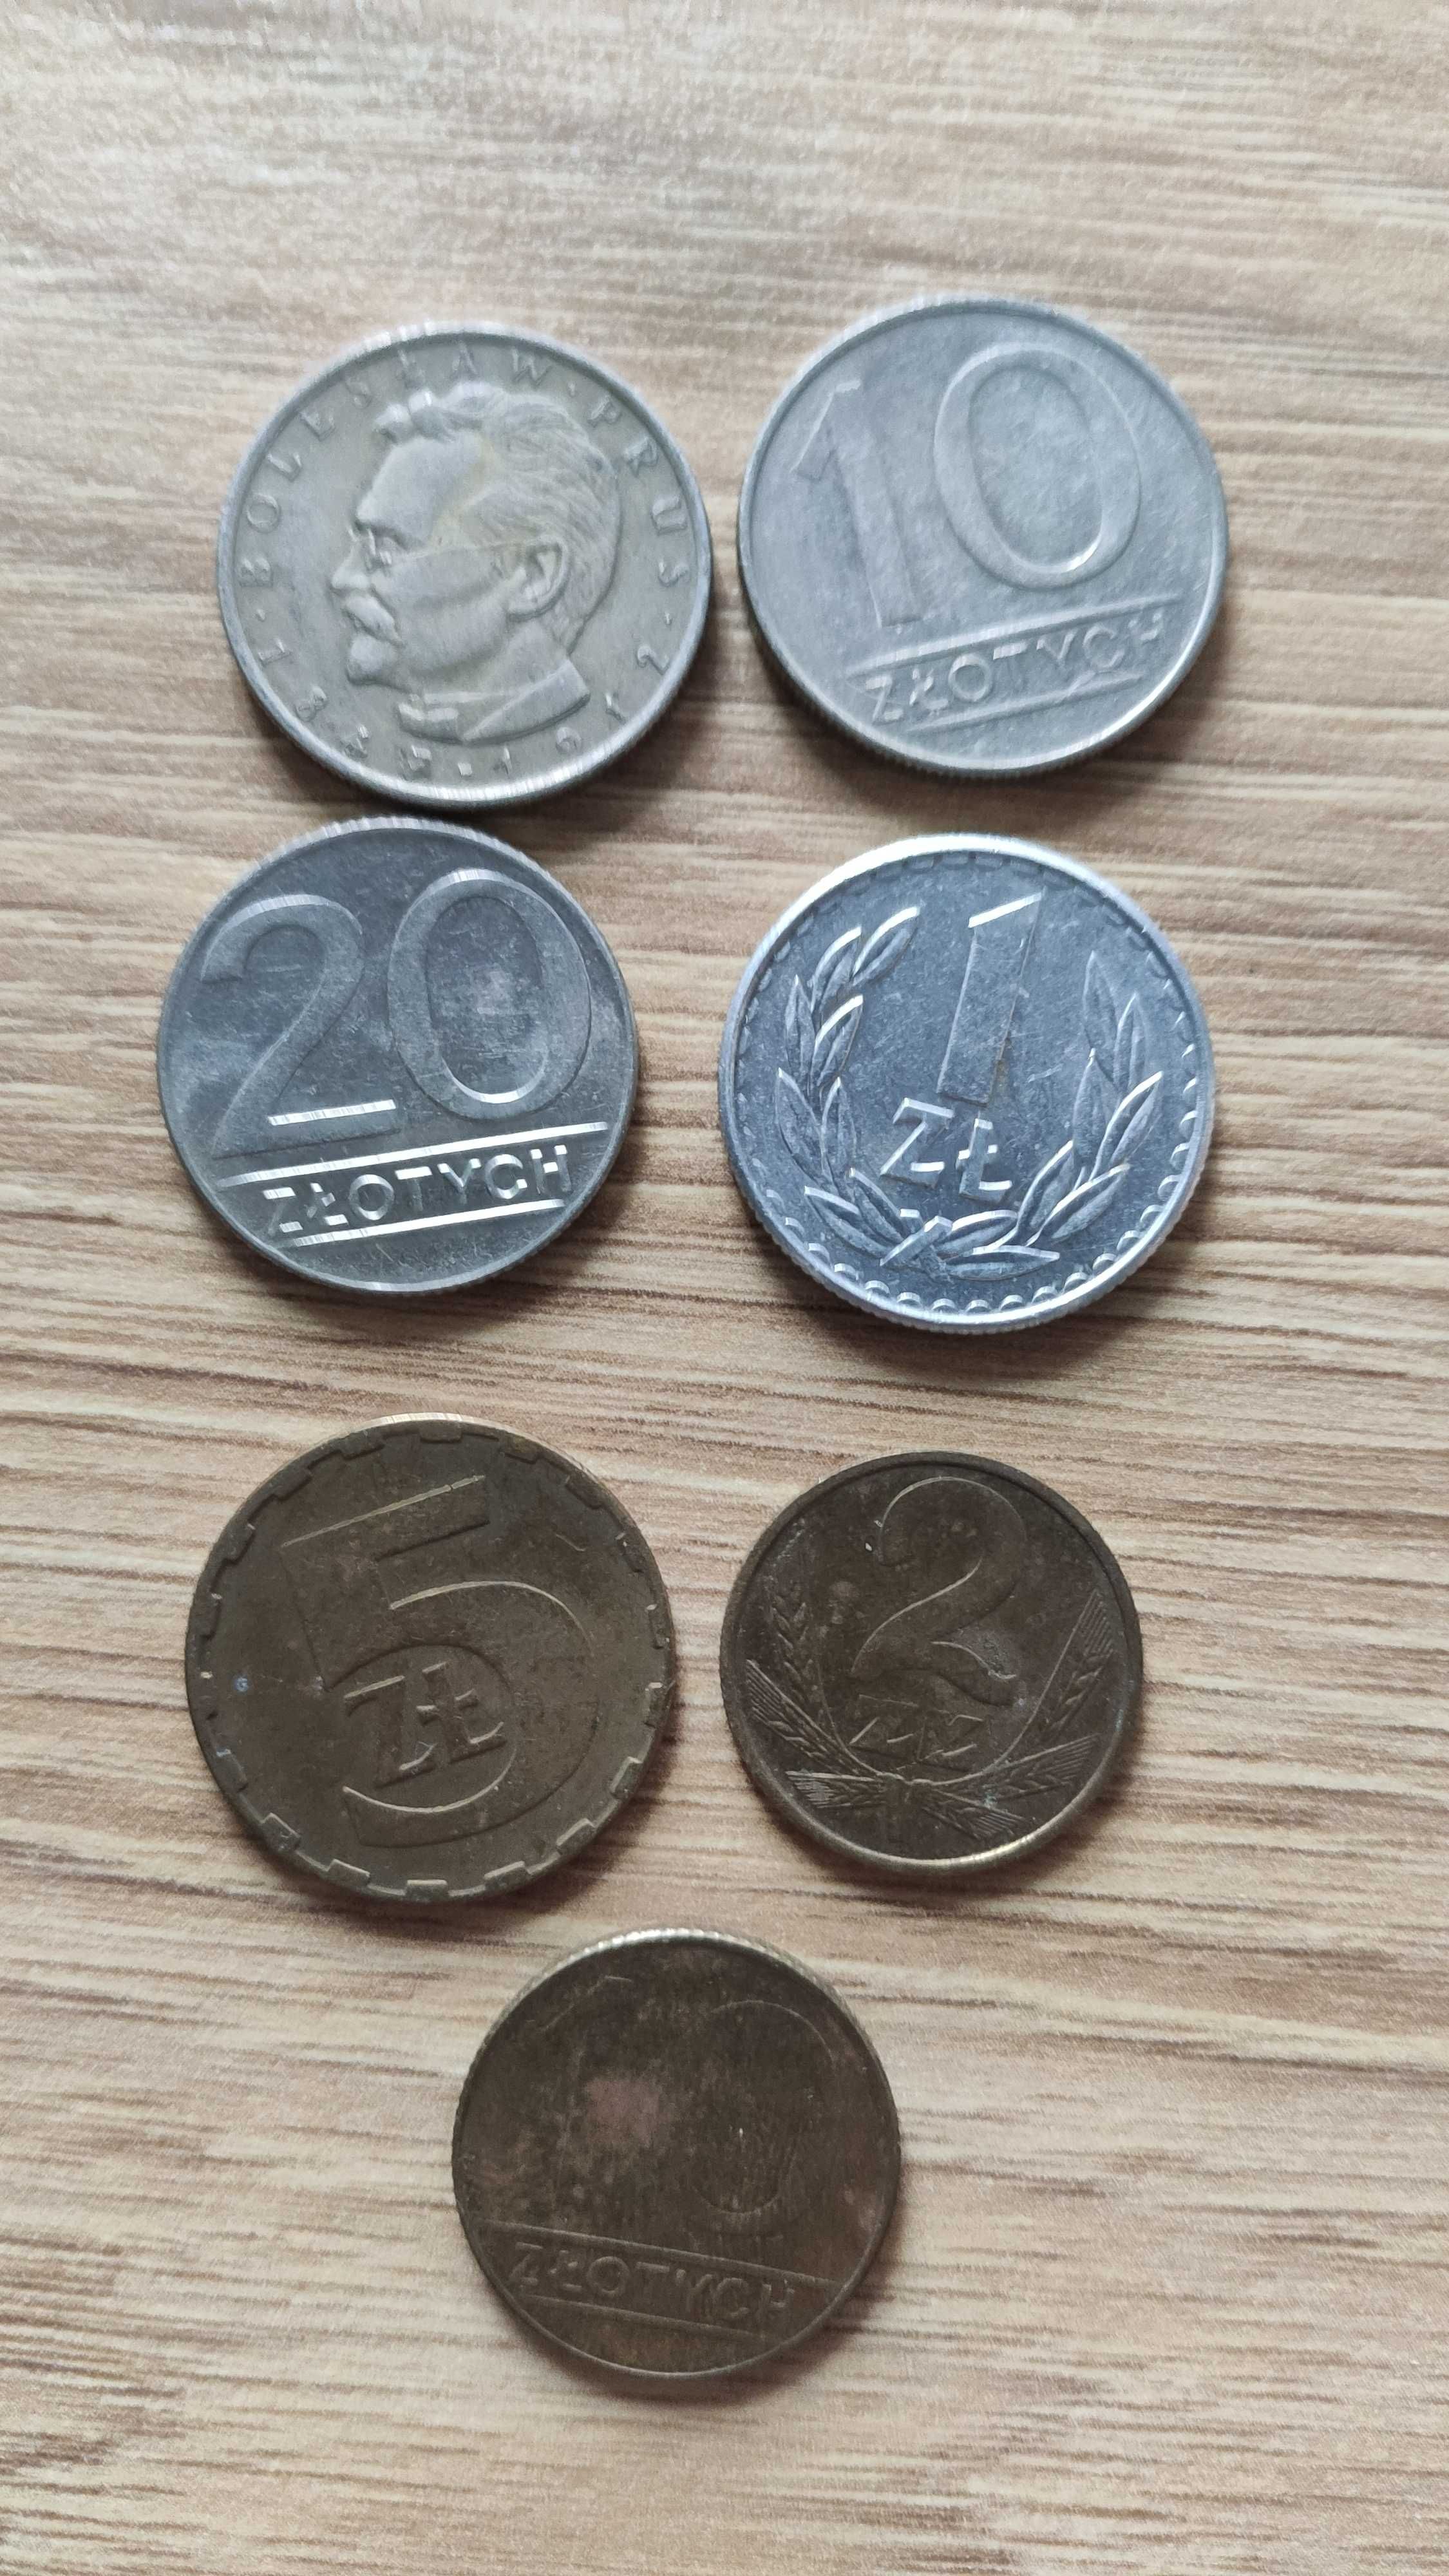 monety z PRL 1 zl ,2 zl, 5 zl 20 zl,10 zl   tanio